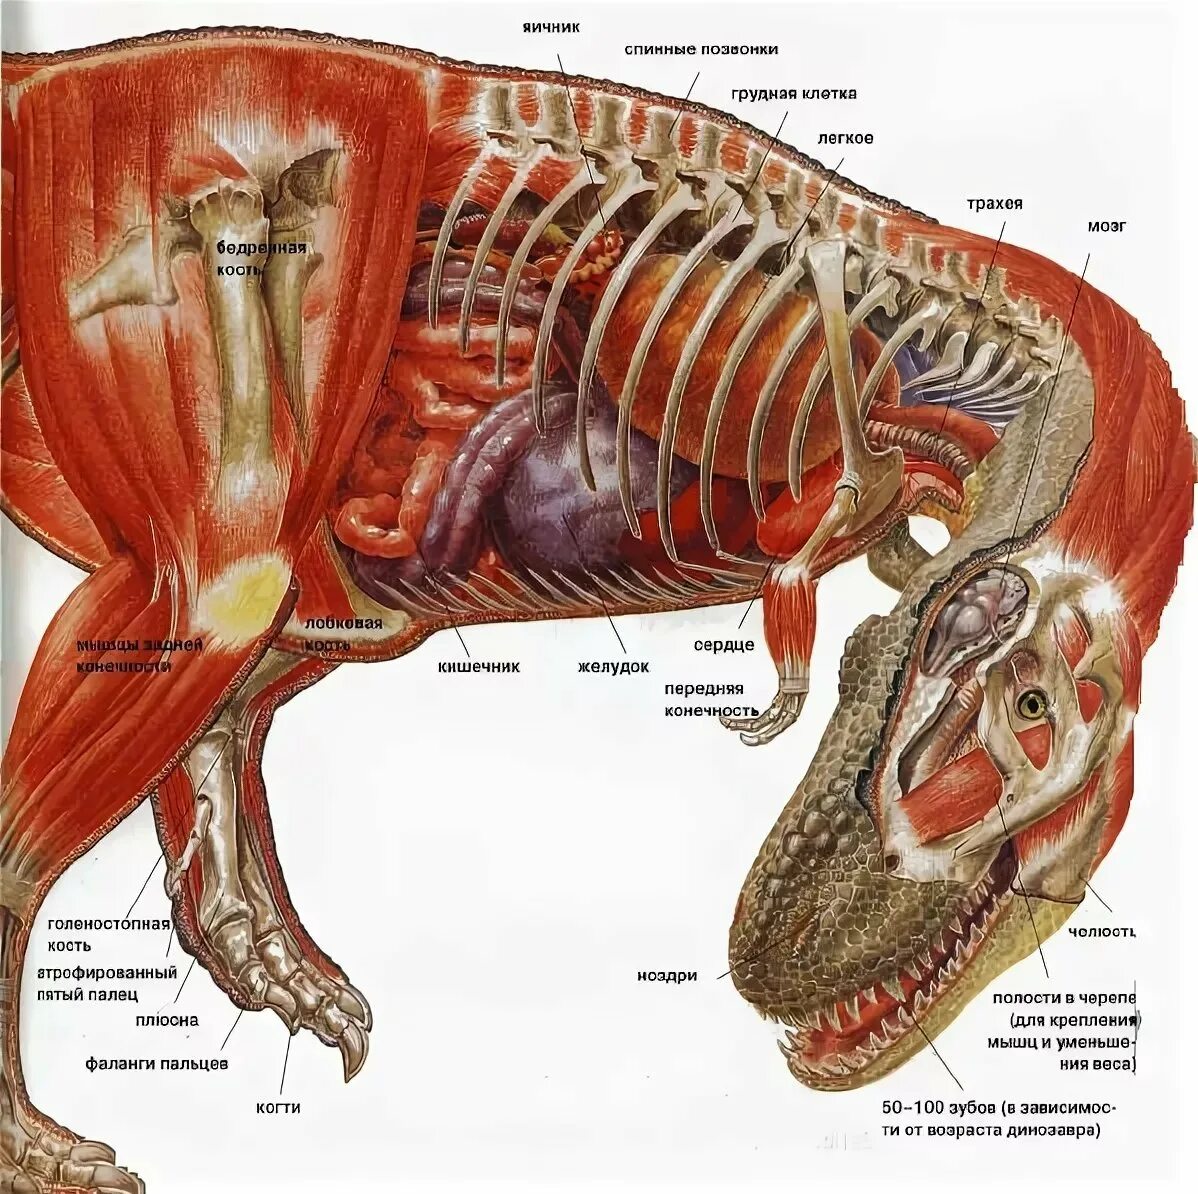 Анатомия тираннозавра Рекса анатомия тираннозавра Рекса. Тираннозавр рекс анатомия. Внутреннее строение тираннозавра Рекса. Тираннозавр рекс строение скелета.